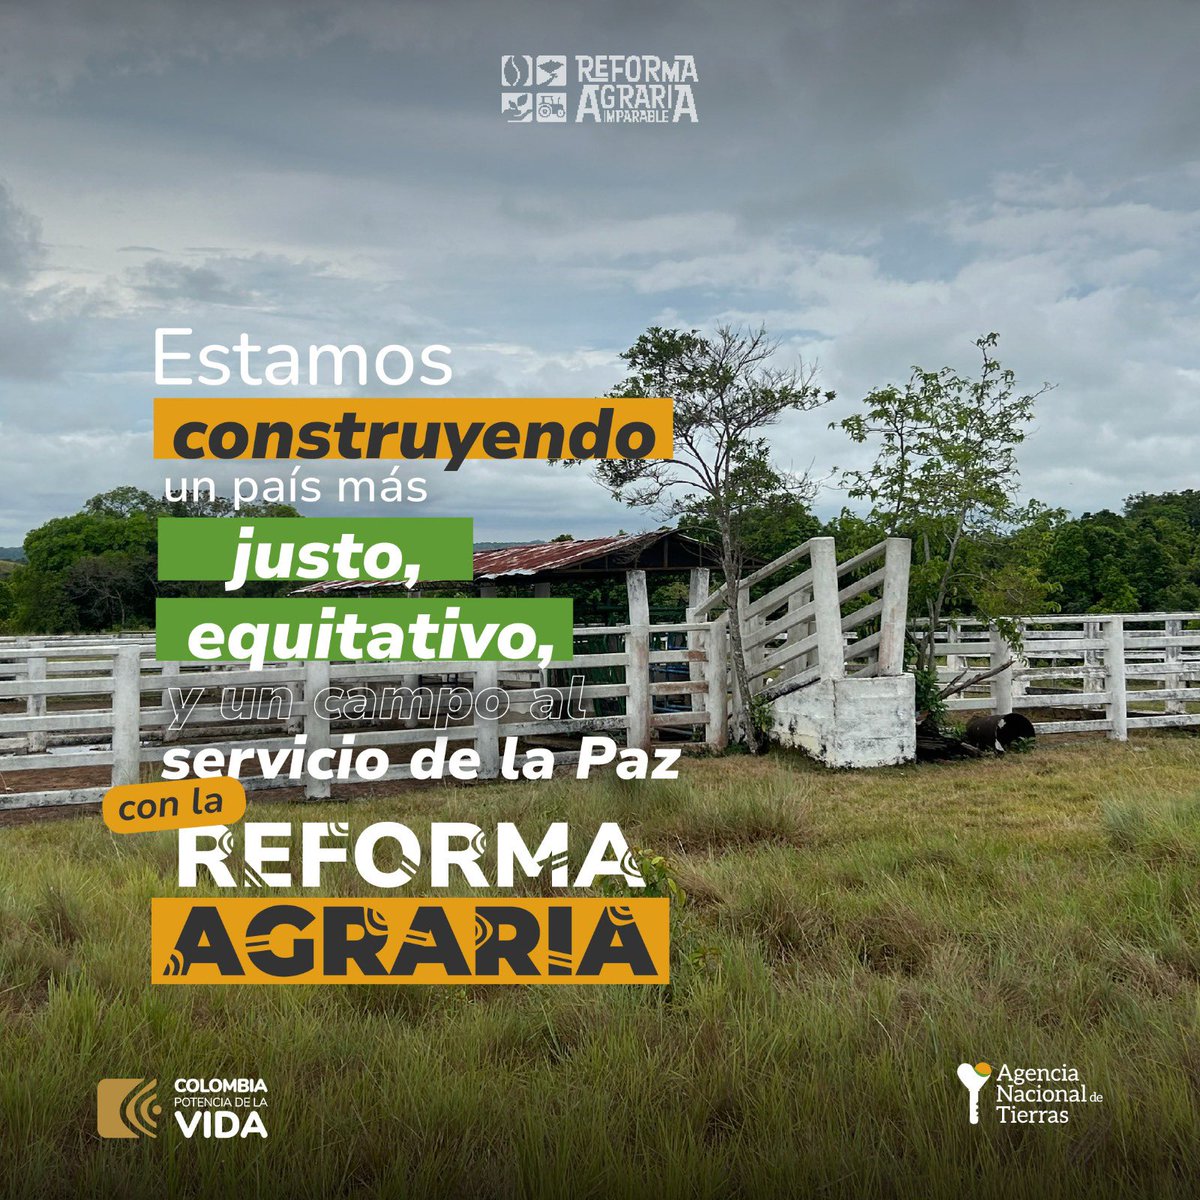 Con la #ReformaAgraria la tierra cumple la función social de:

✅Producir alimentos
✅Ser propiedad de los campesinos y campesinas que la trabajan
✅Propiciar la soberanía alimentaria

#MetaReformaAgraria